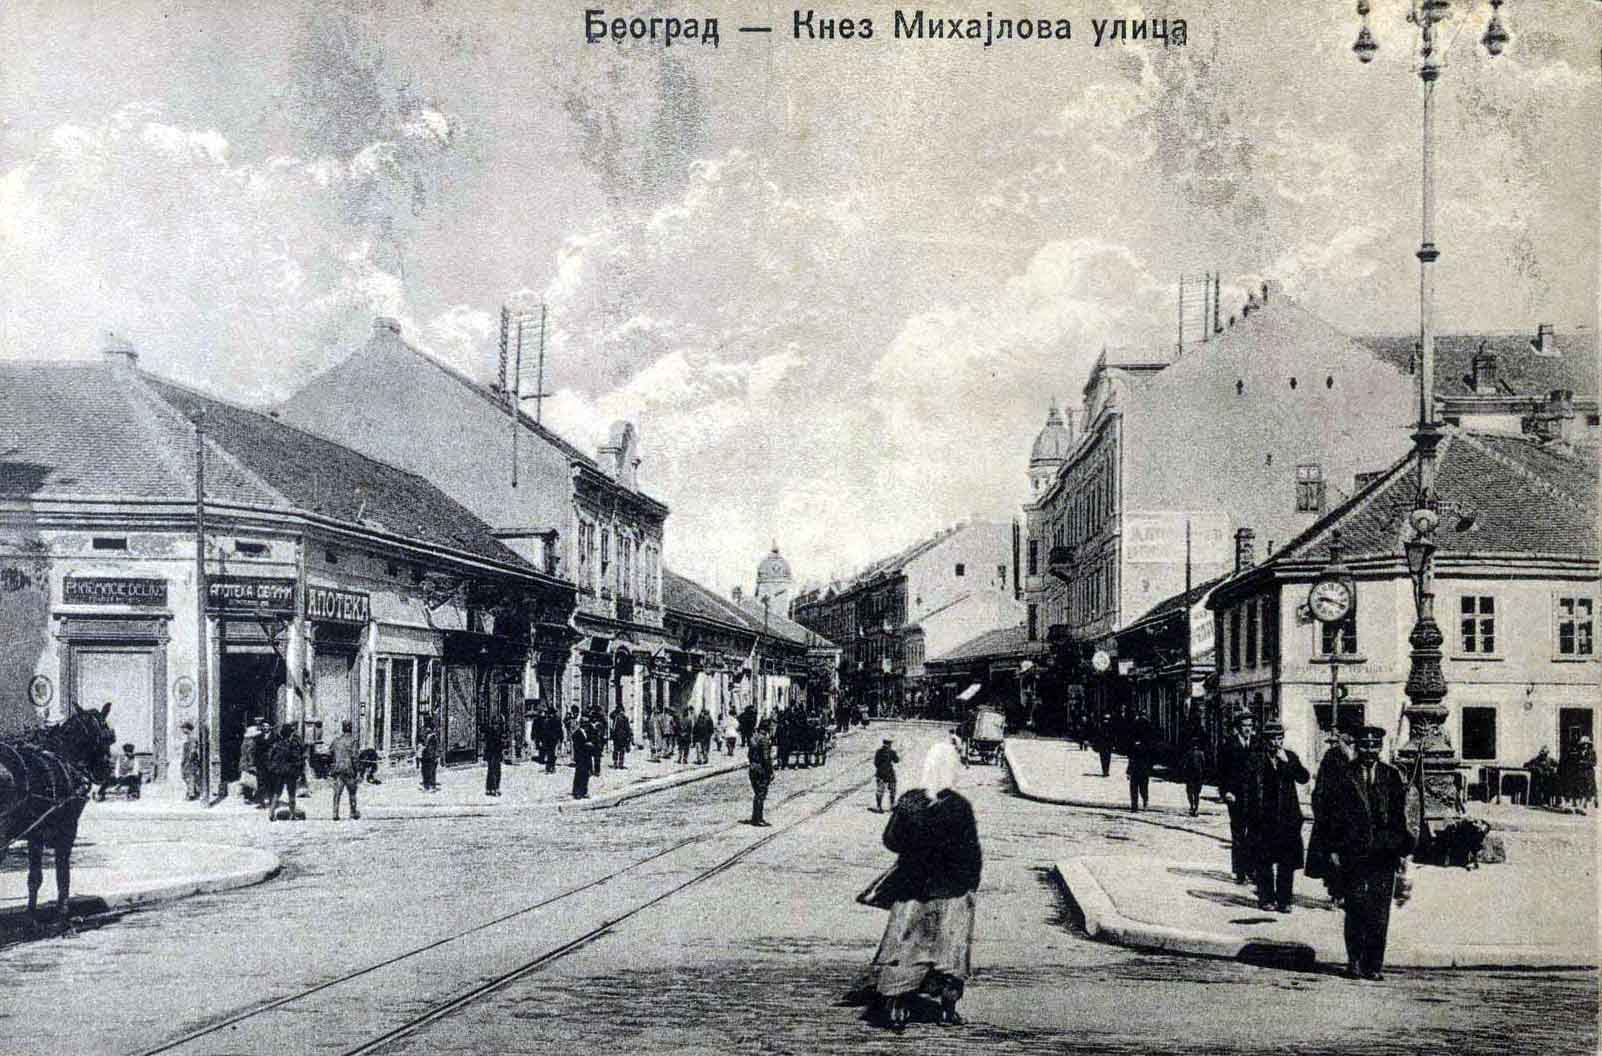 Belgrade-1920 - Belgrade Old , HD Wallpaper & Backgrounds